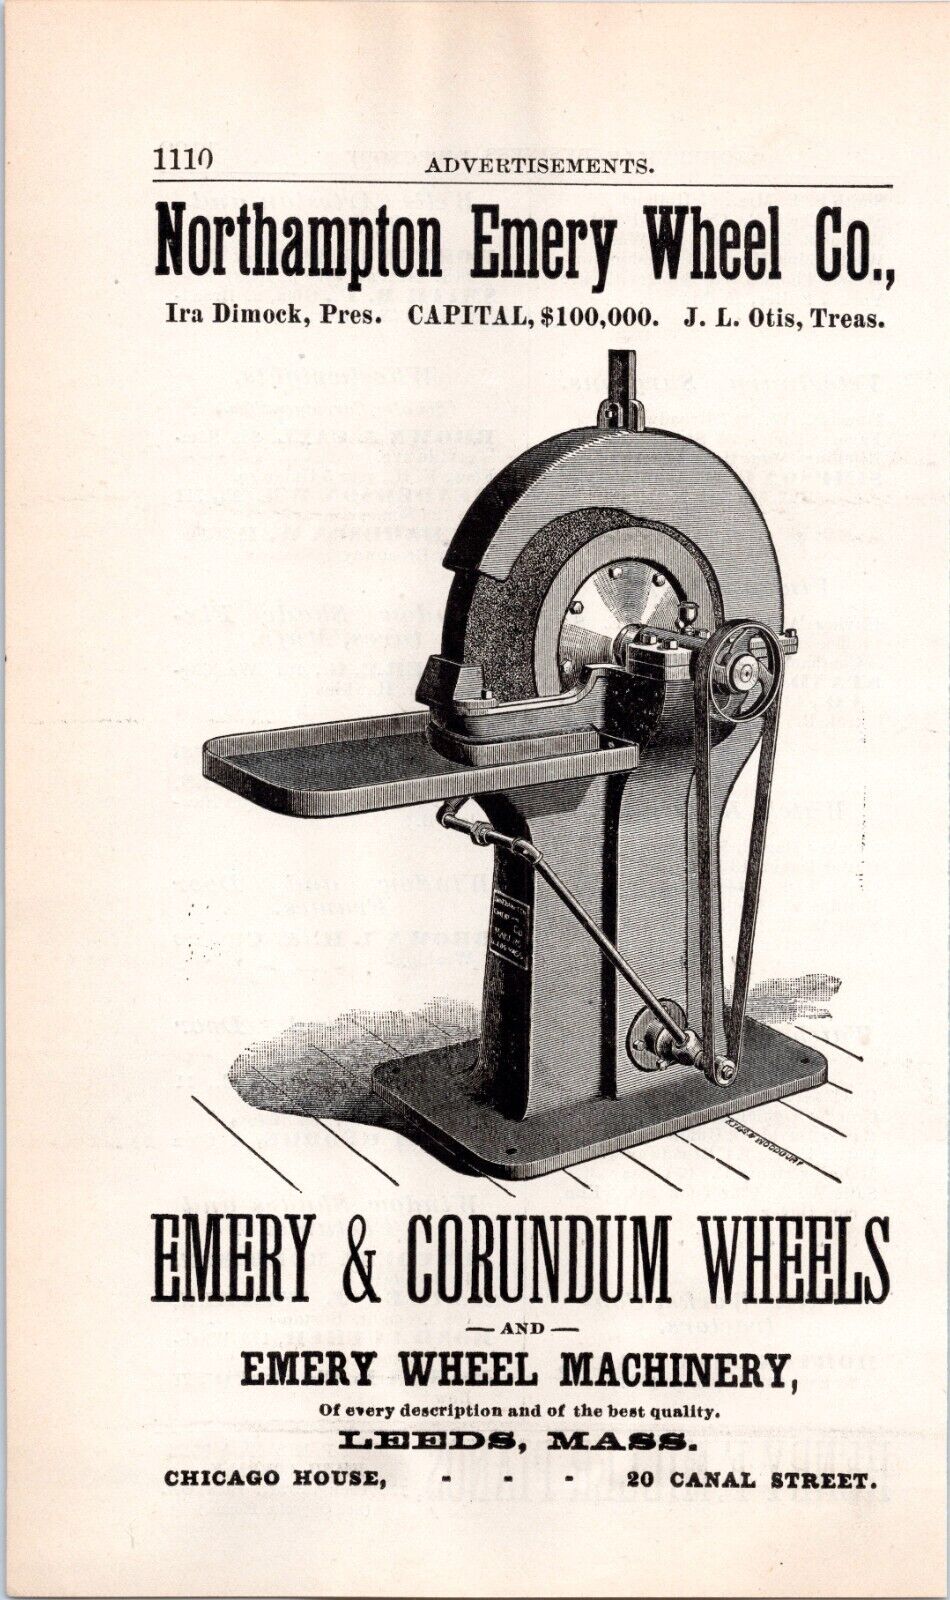 1889 Print Ad- Northampton Emery Wheel Company, Leeds Massachusetts